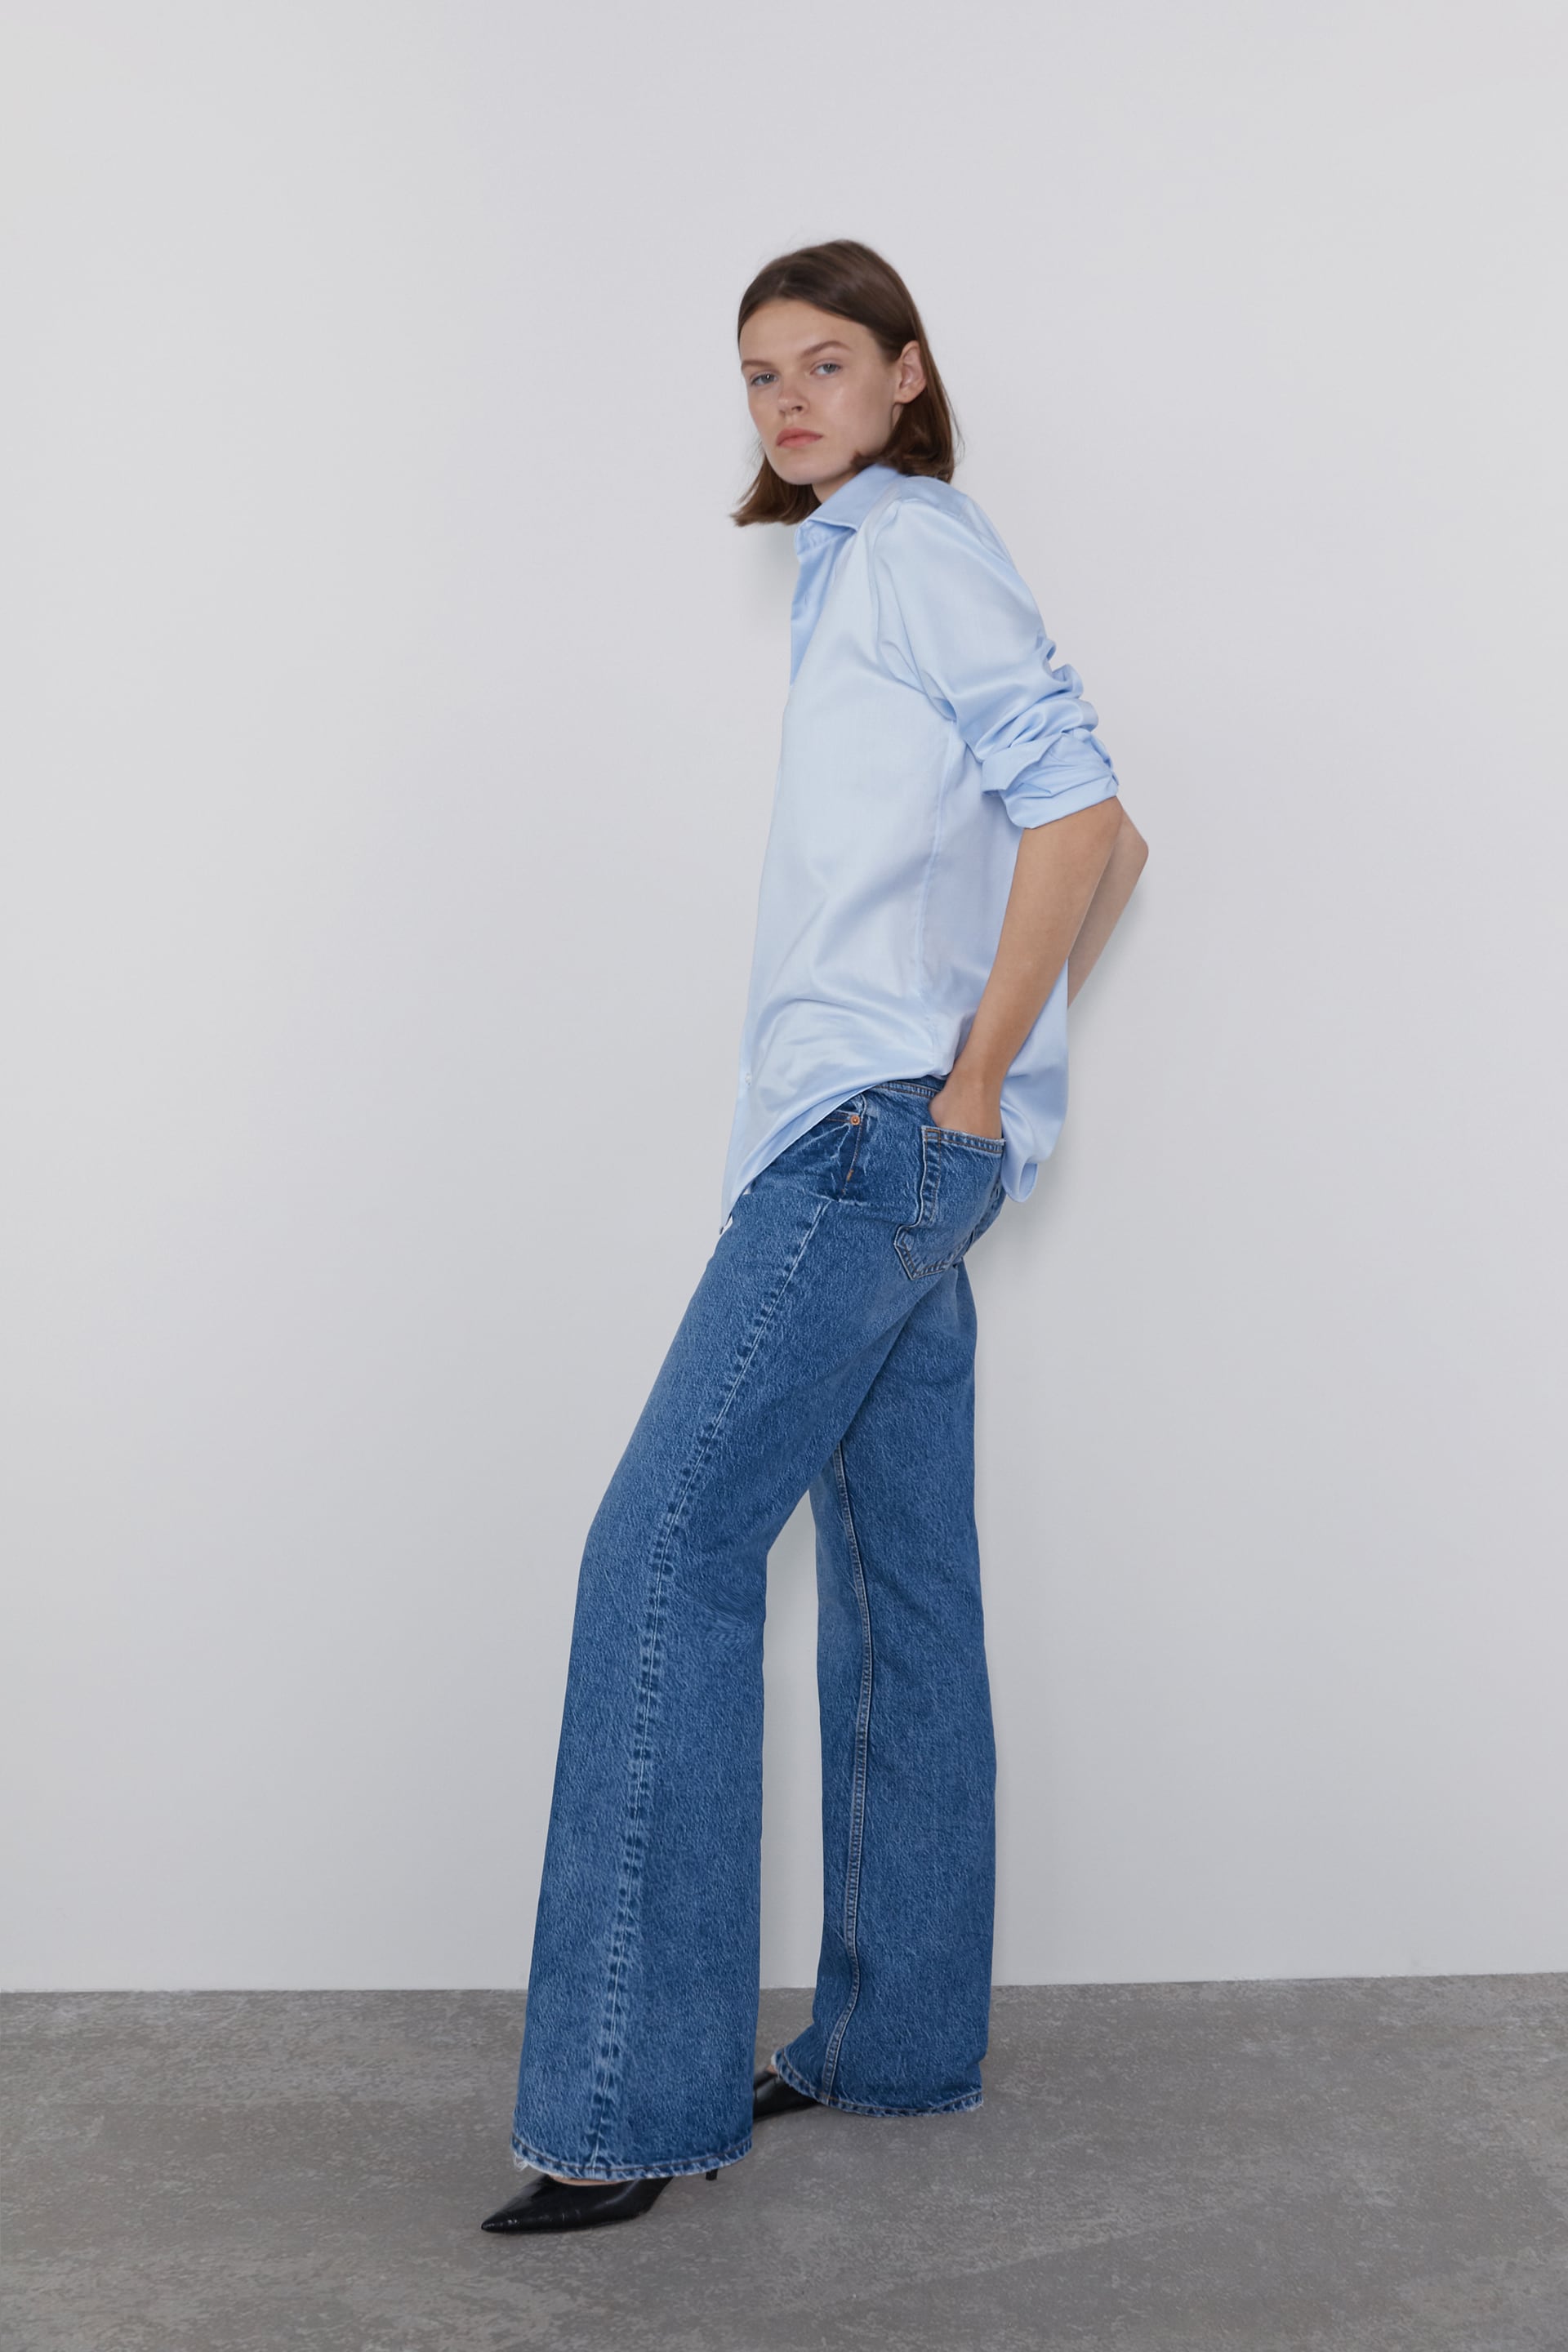 bootcut jeans fashion 2019